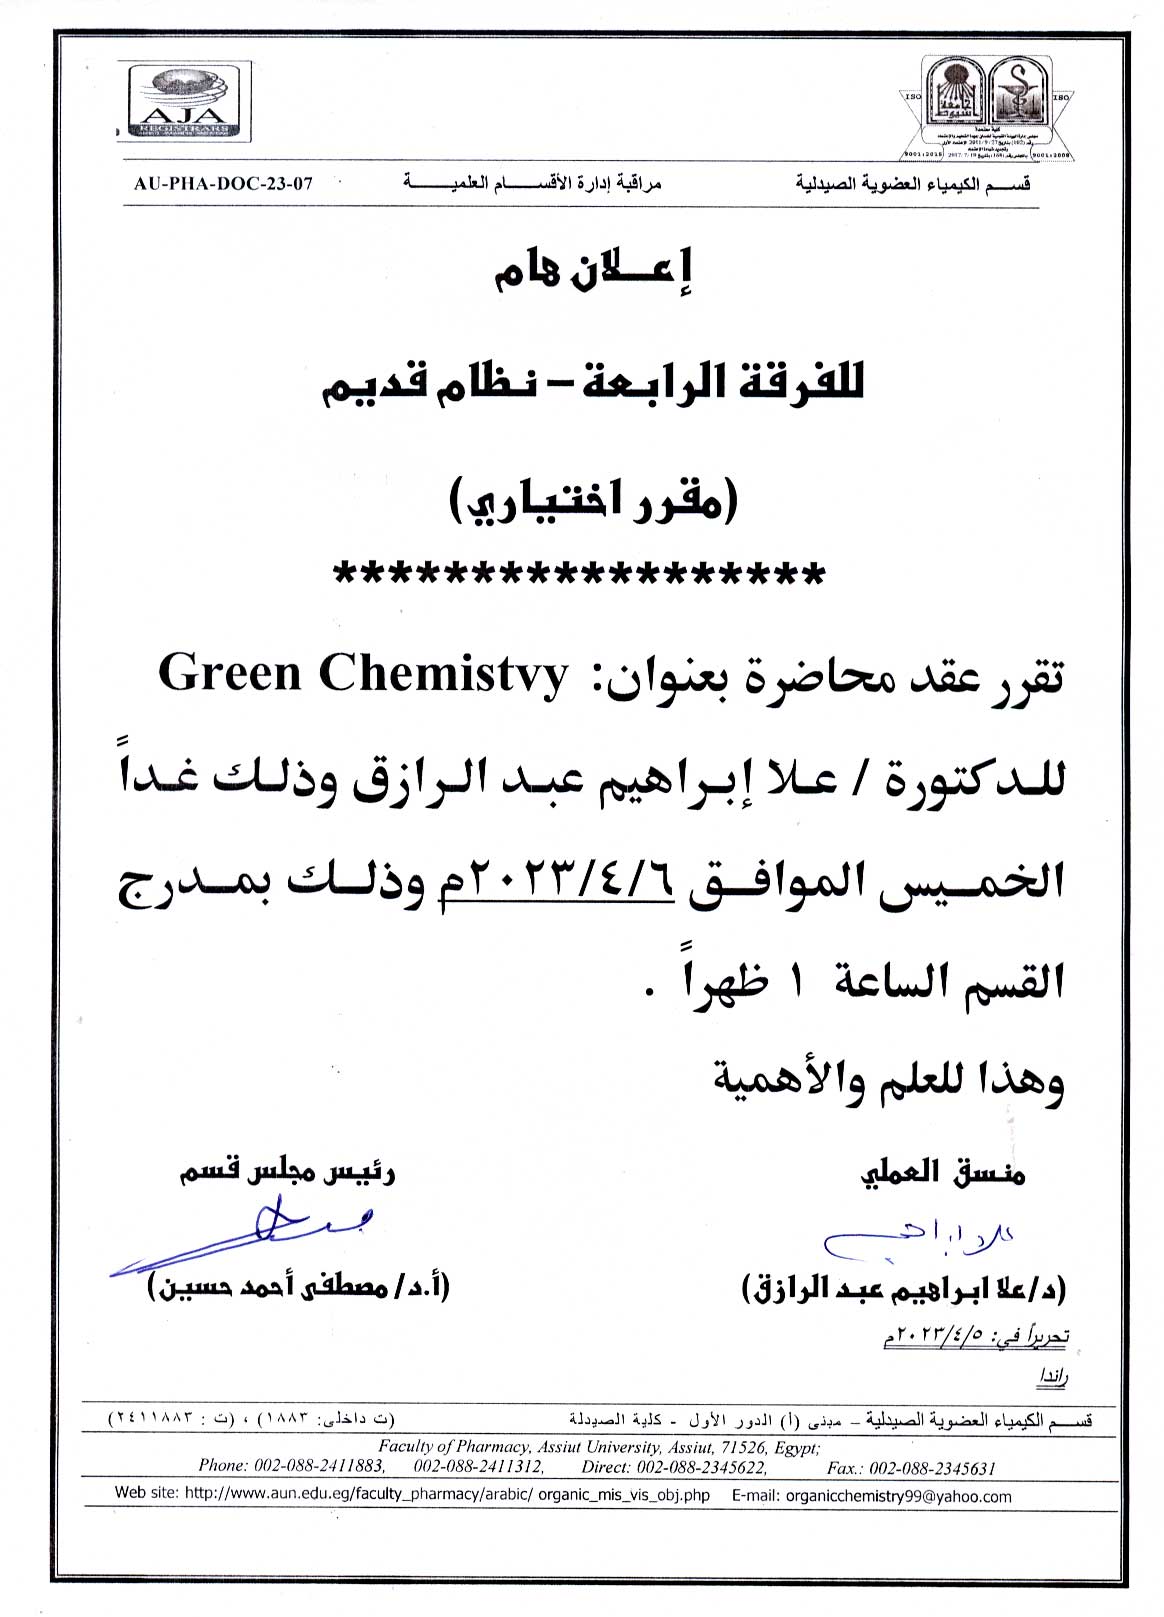 اعلان هام للفرقة الرابعة قديم (مقرر اختياري) تقرر عقد محاضرة بعنوان "Green Chemistvy" وذلك يوم الخميس 6 أبريل 2023م